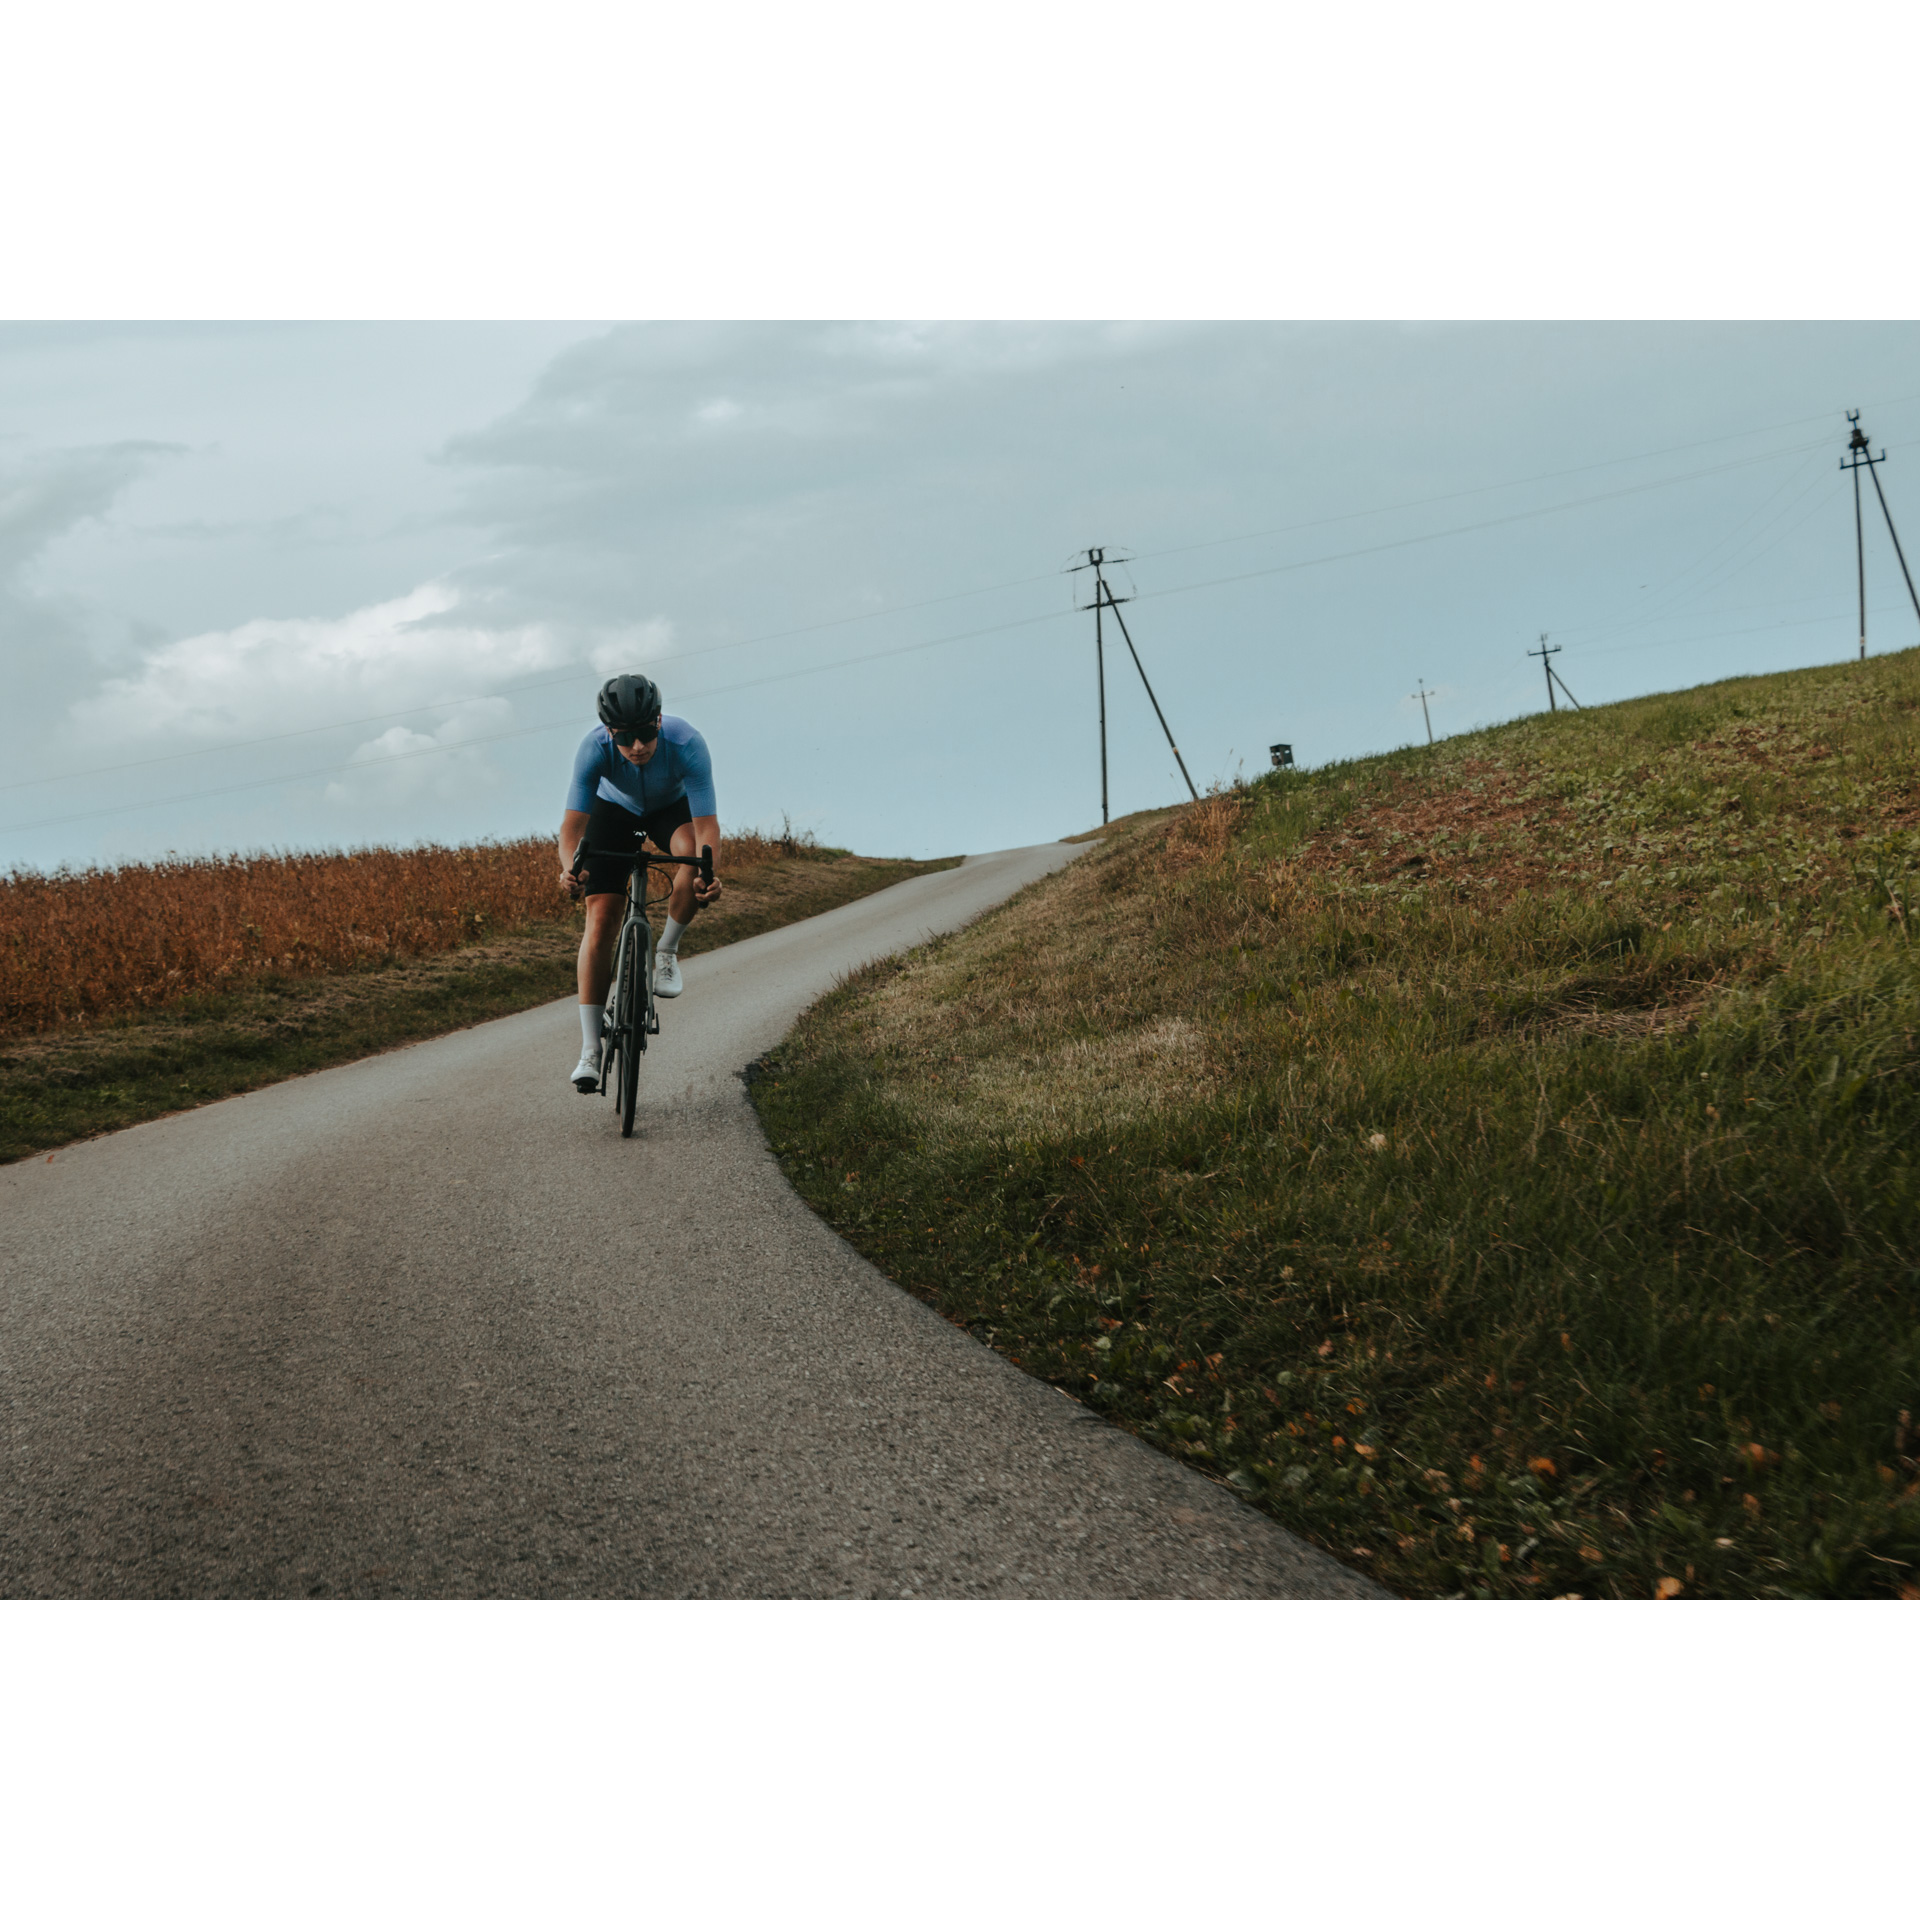 Rowerzysta w niebiesko-czarnym stroju kolarskim, kasku i okularach zjeżdżający z górki rowerem asfaltową drogą wśród zielonych łąk